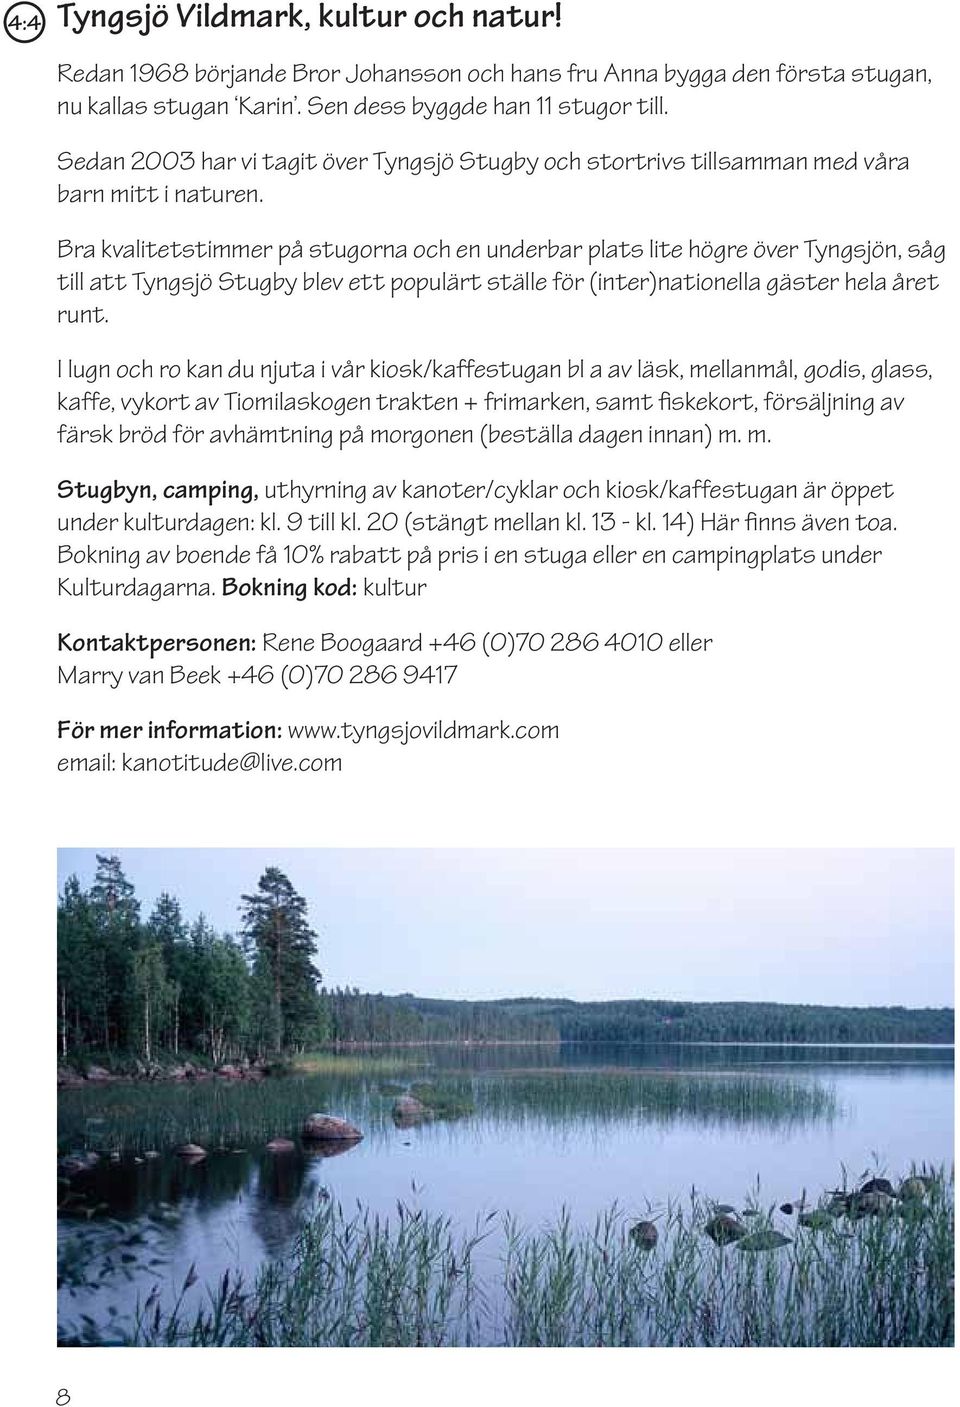 Bra kvalitetstimmer på stugorna och en underbar plats lite högre över Tyngsjön, såg till att Tyngsjö Stugby blev ett populärt ställe för (inter)nationella gäster hela året runt.